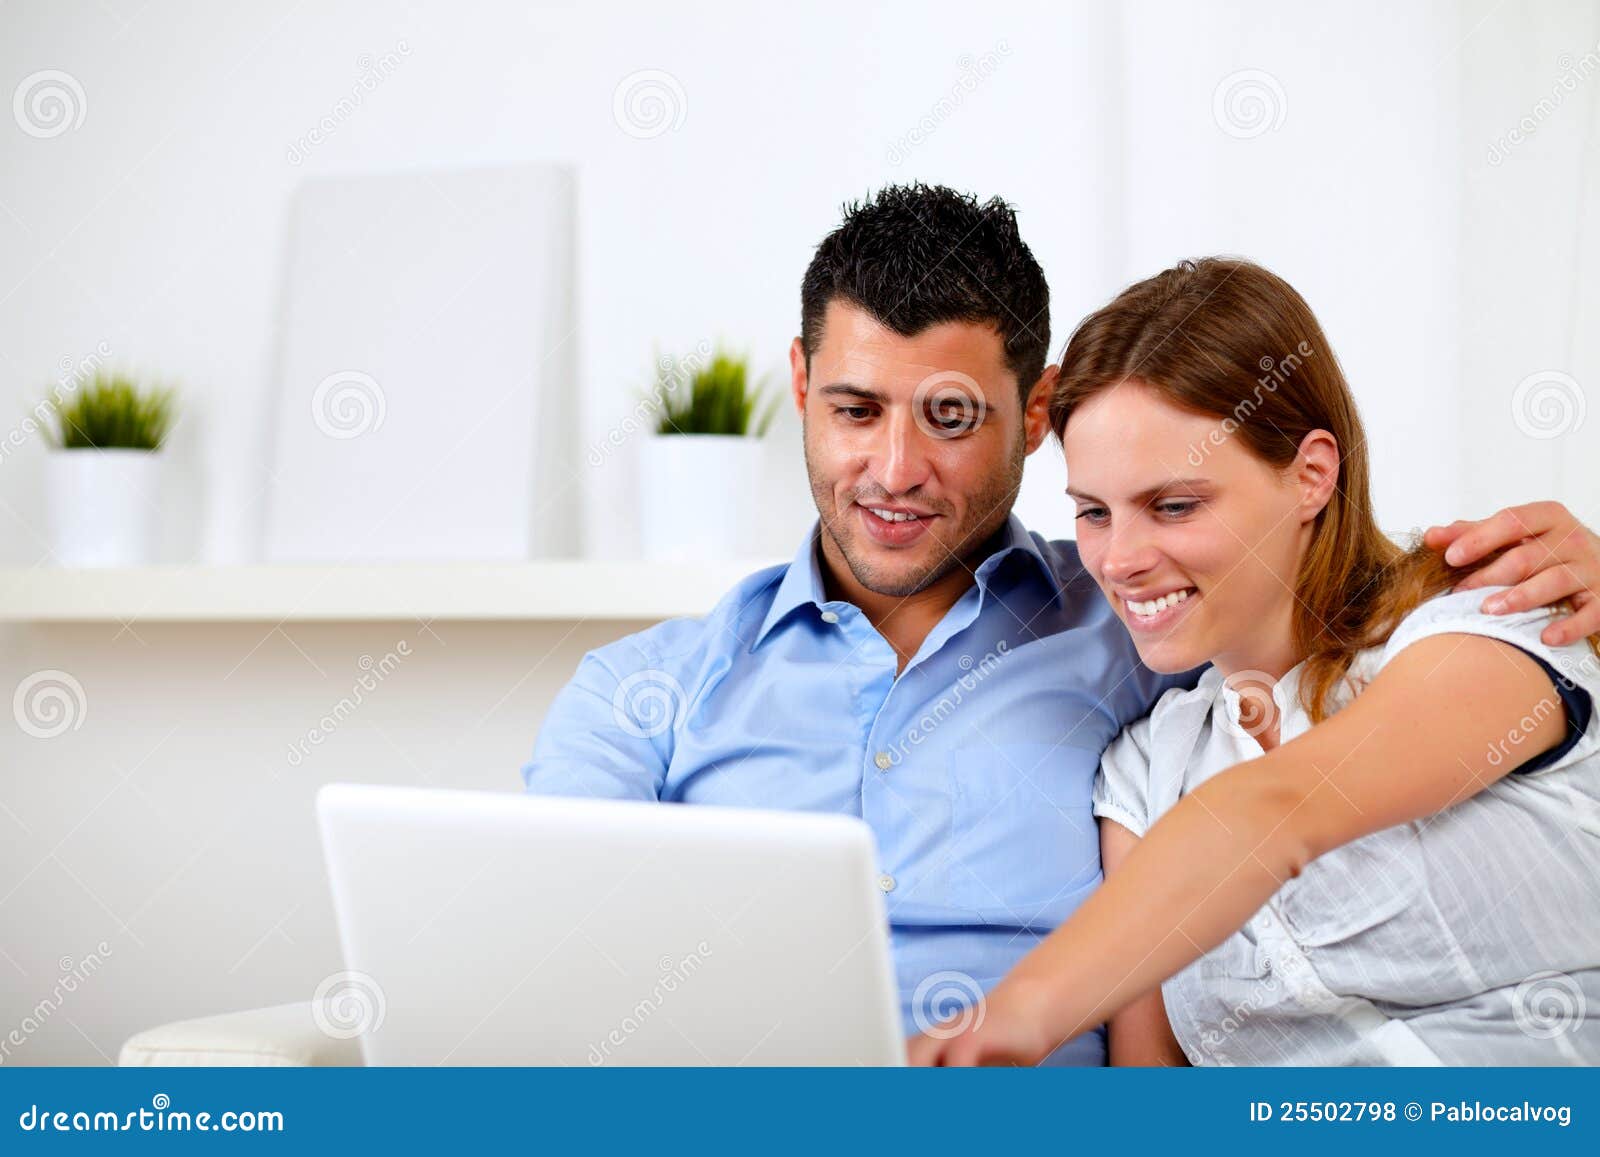 Freundliche junge Paare unter Verwendung des Laptops zusammen